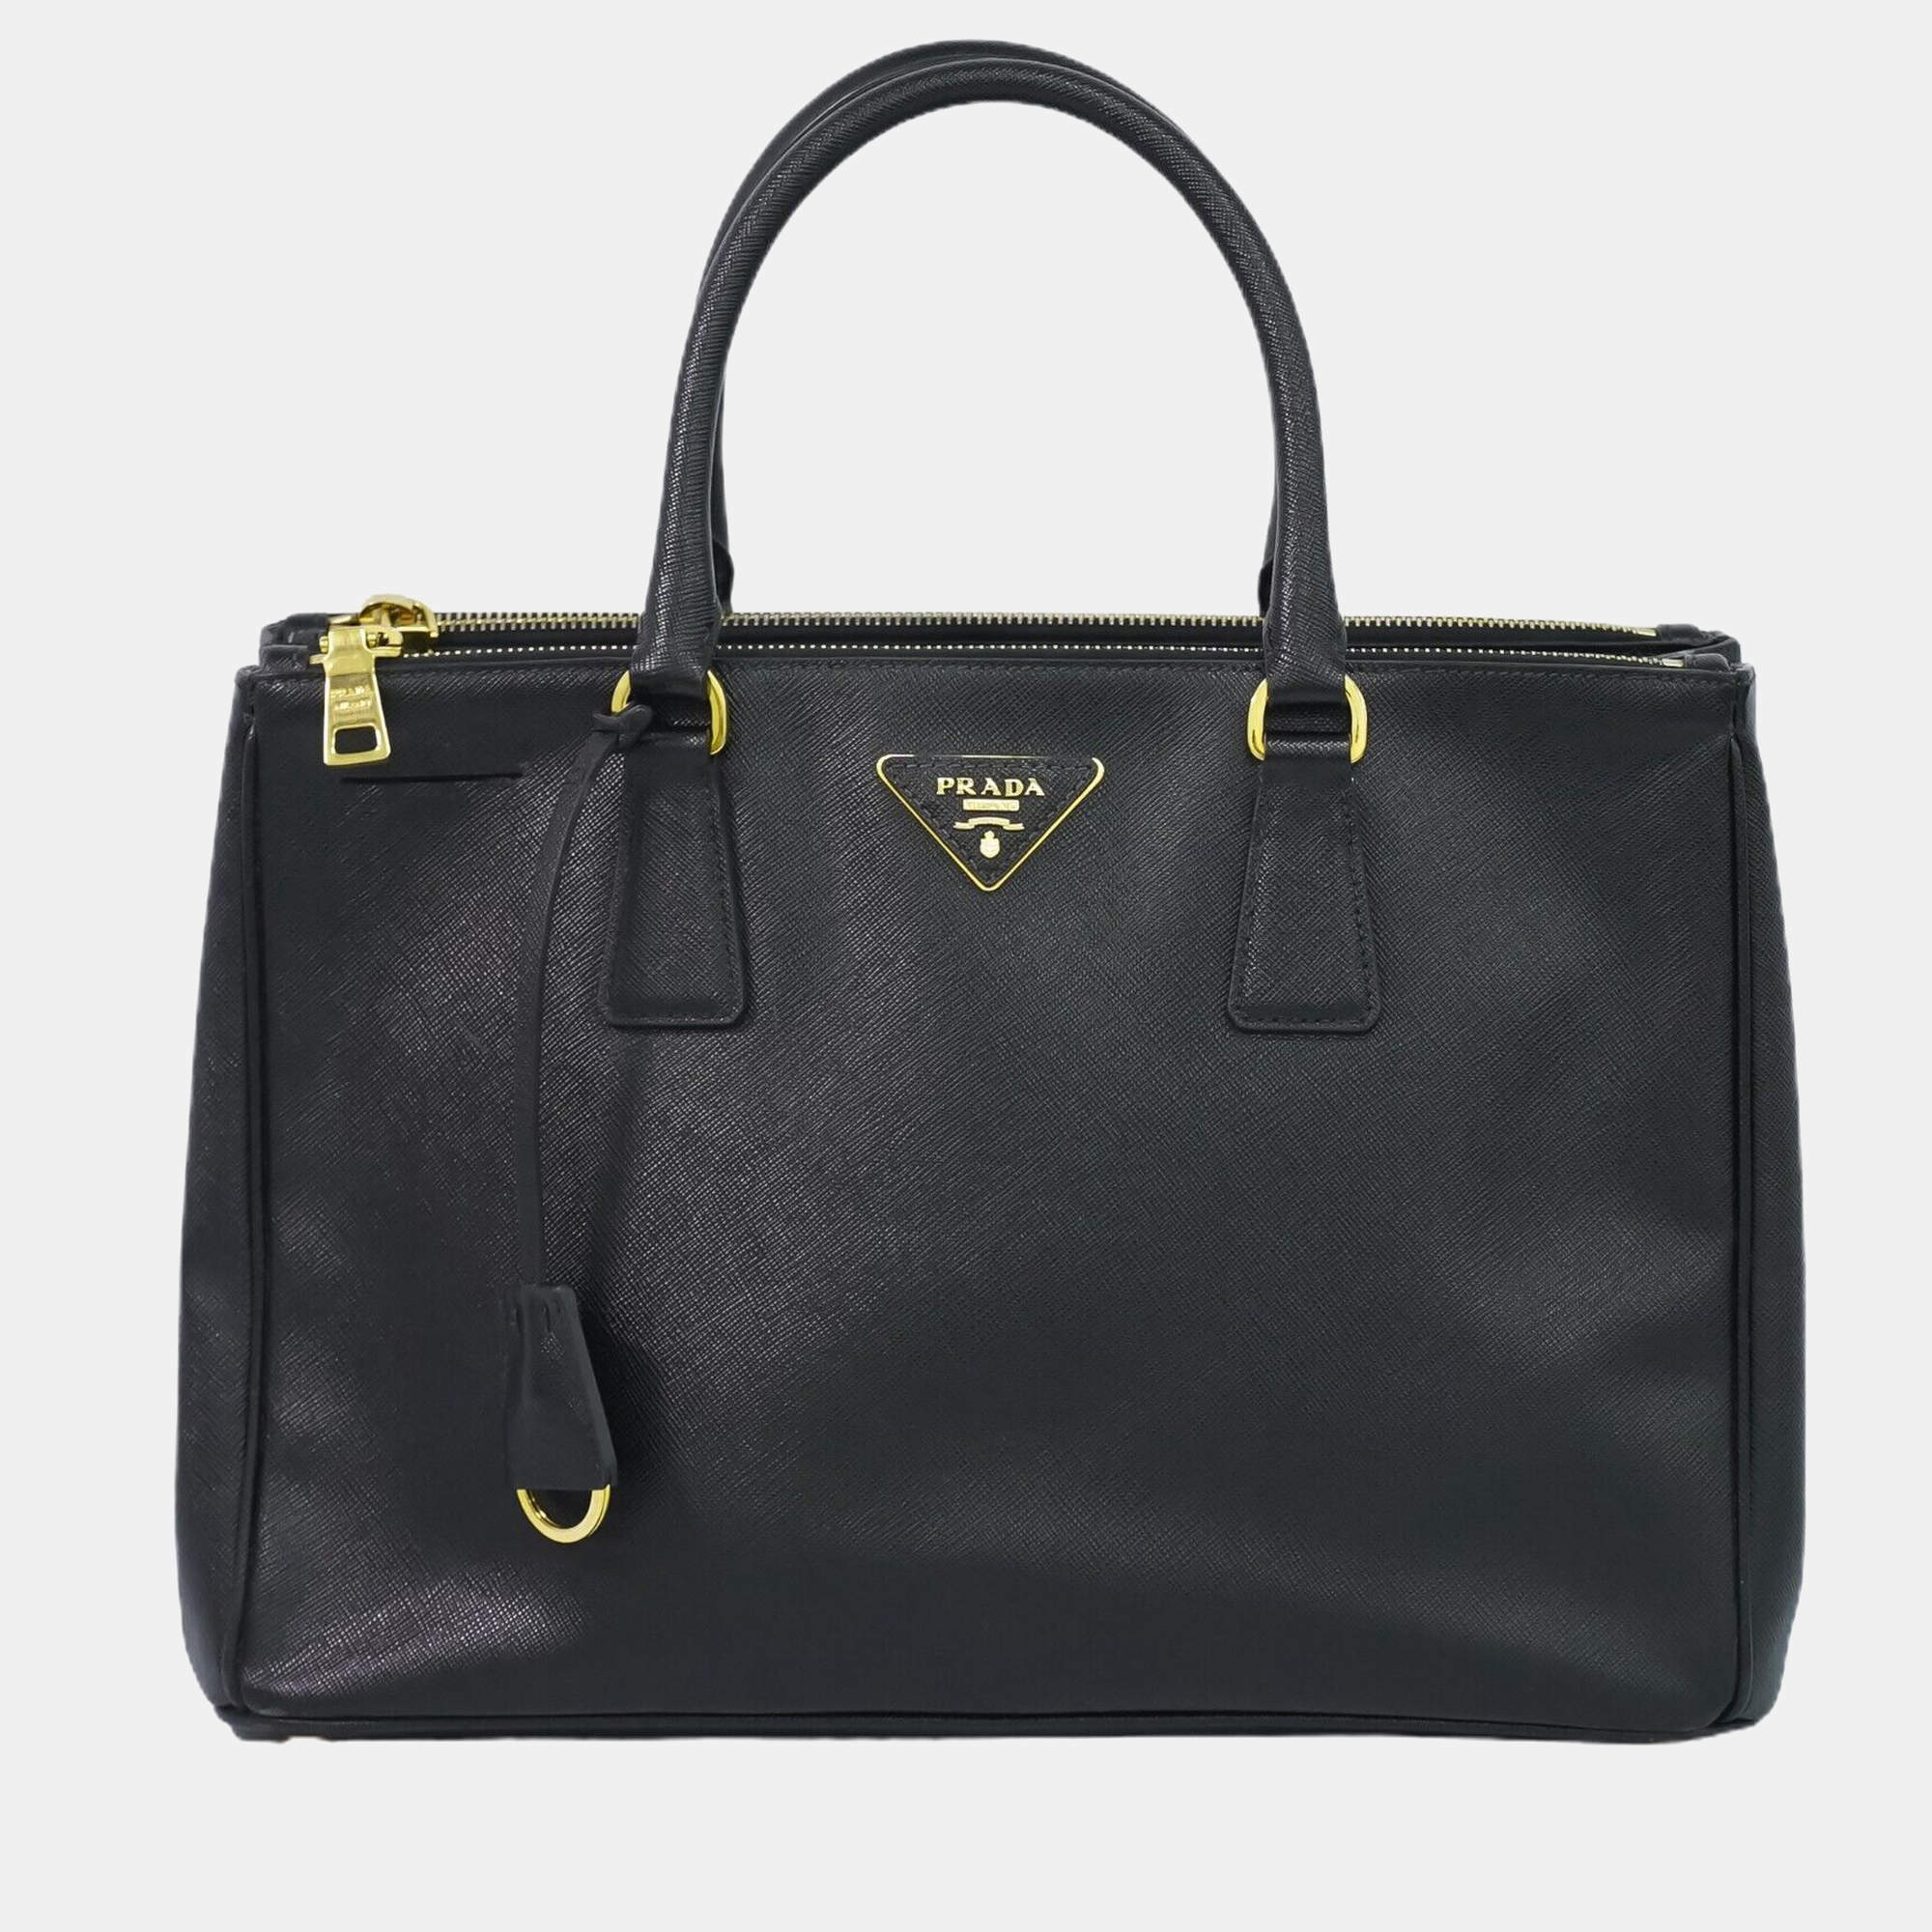 Prada Black Leather Large Saffiano Lux Galleria Double Zip Tote Bag Prada